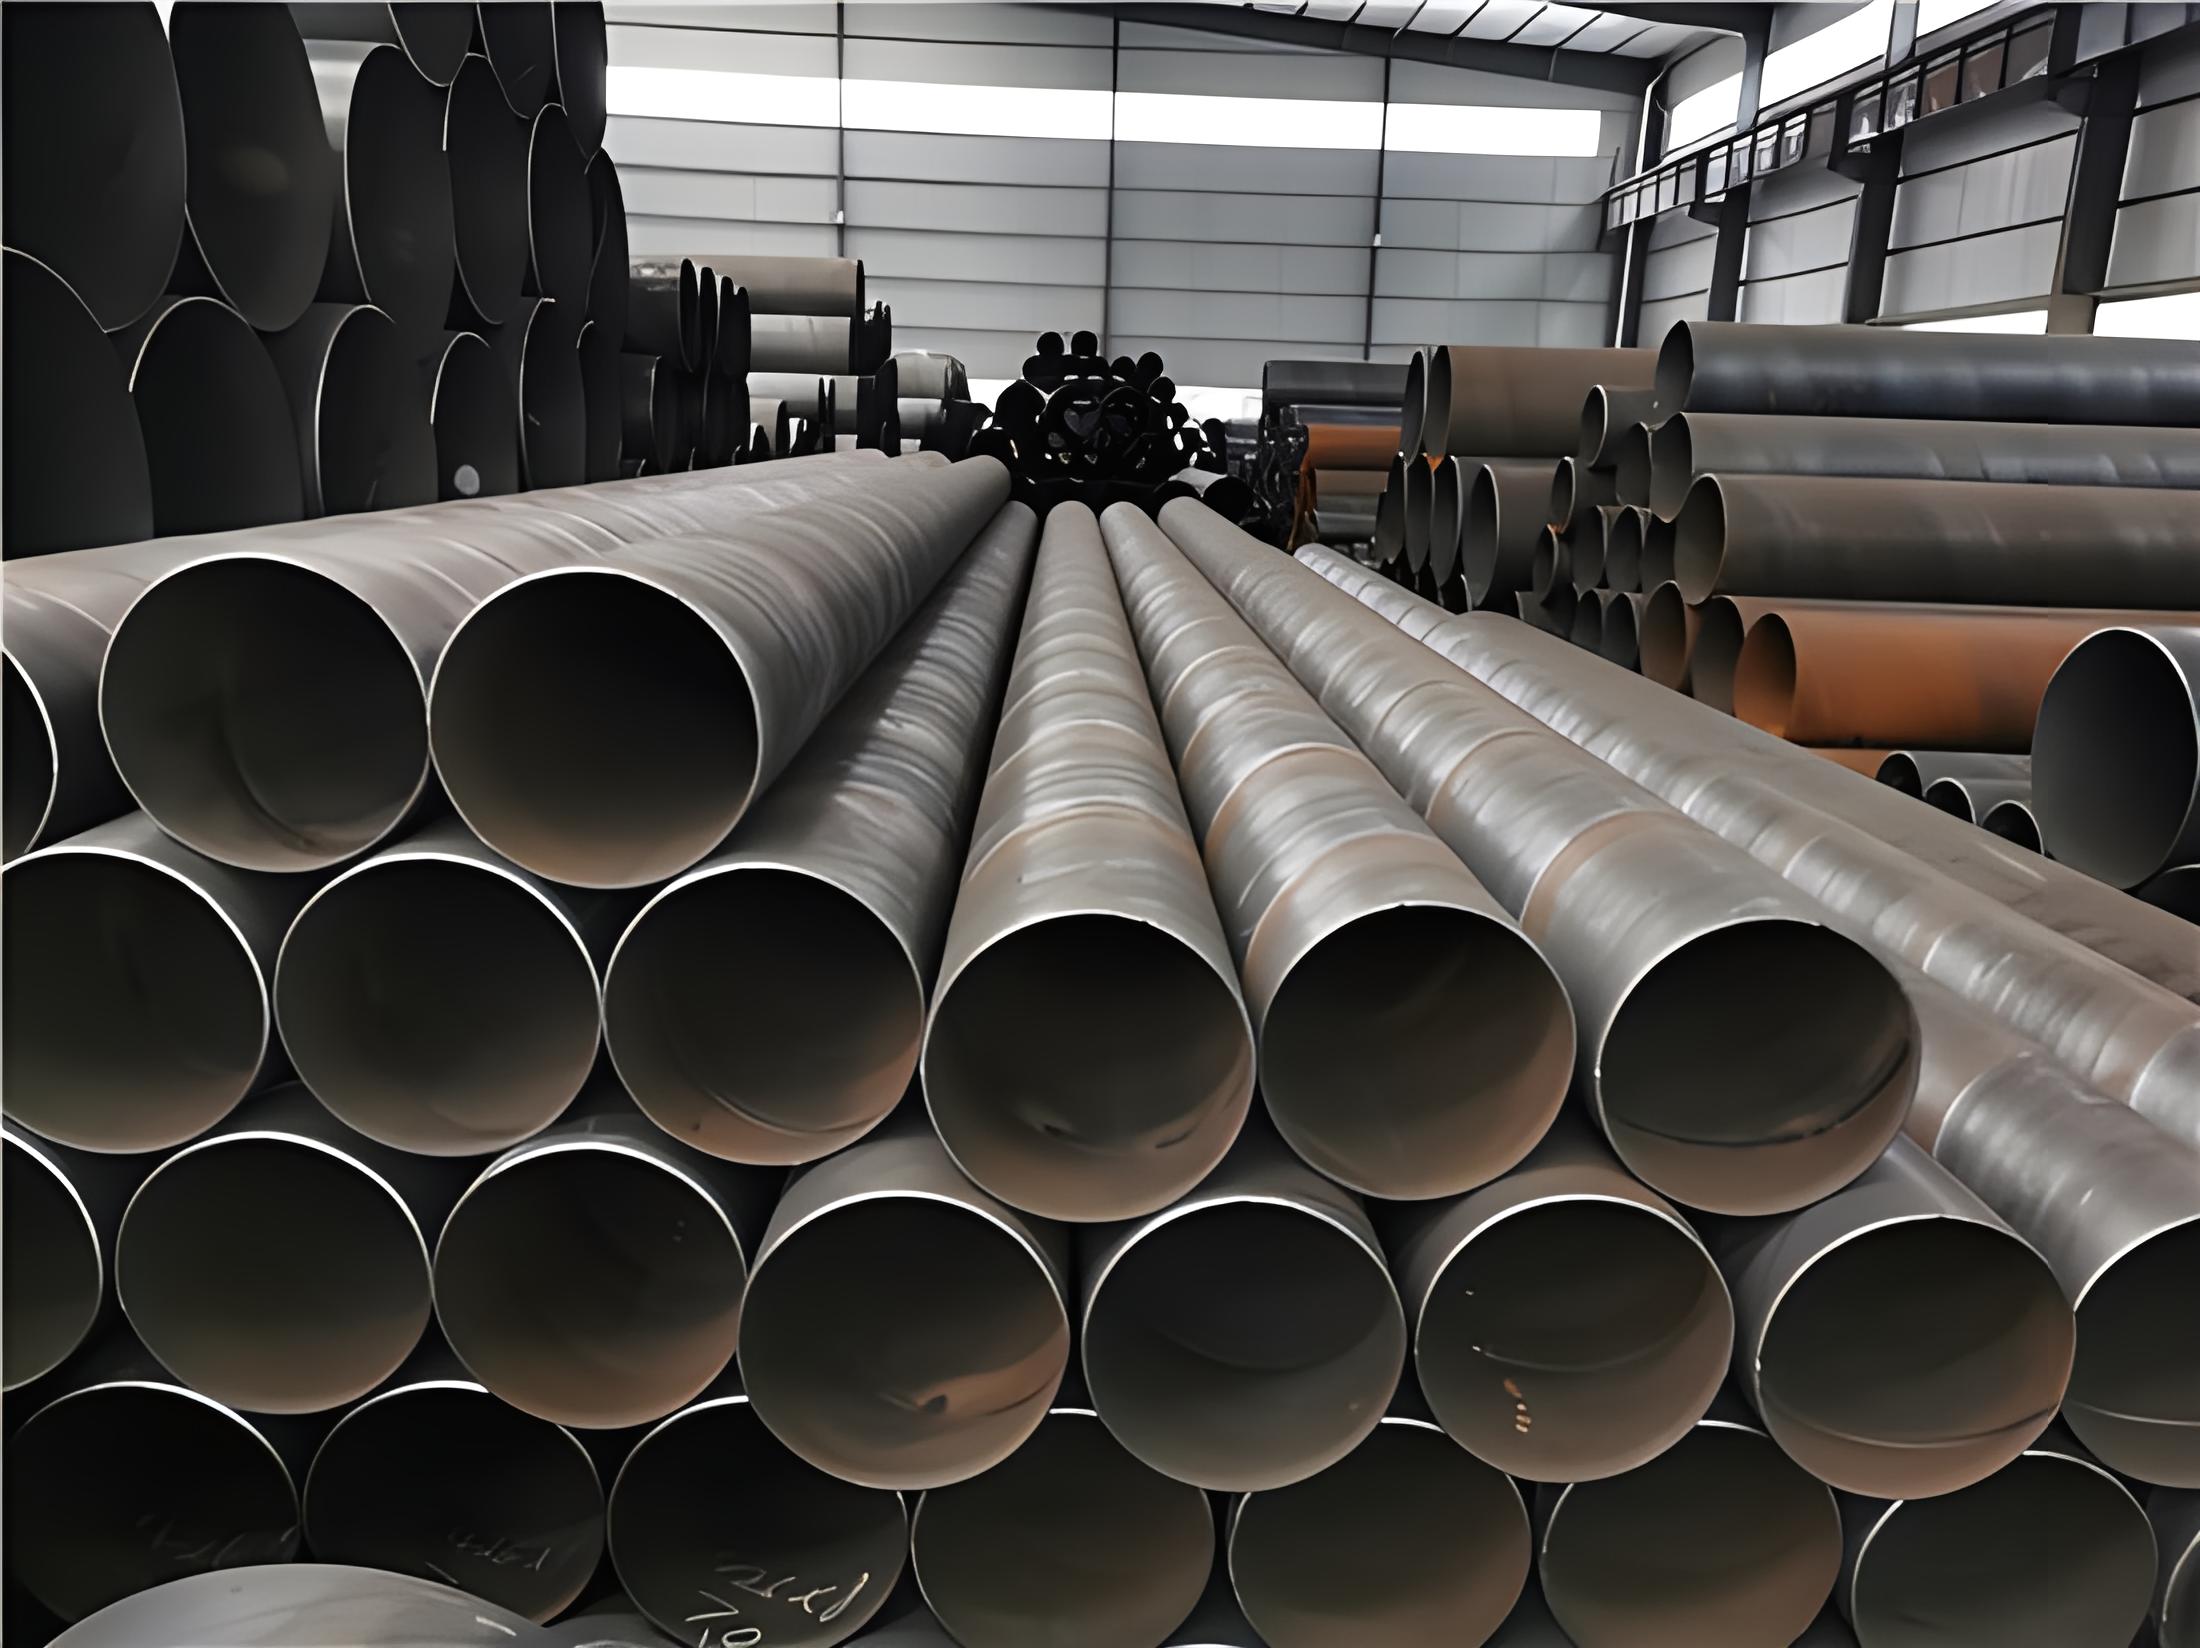 西藏螺旋钢管现代工业建设的坚实基石